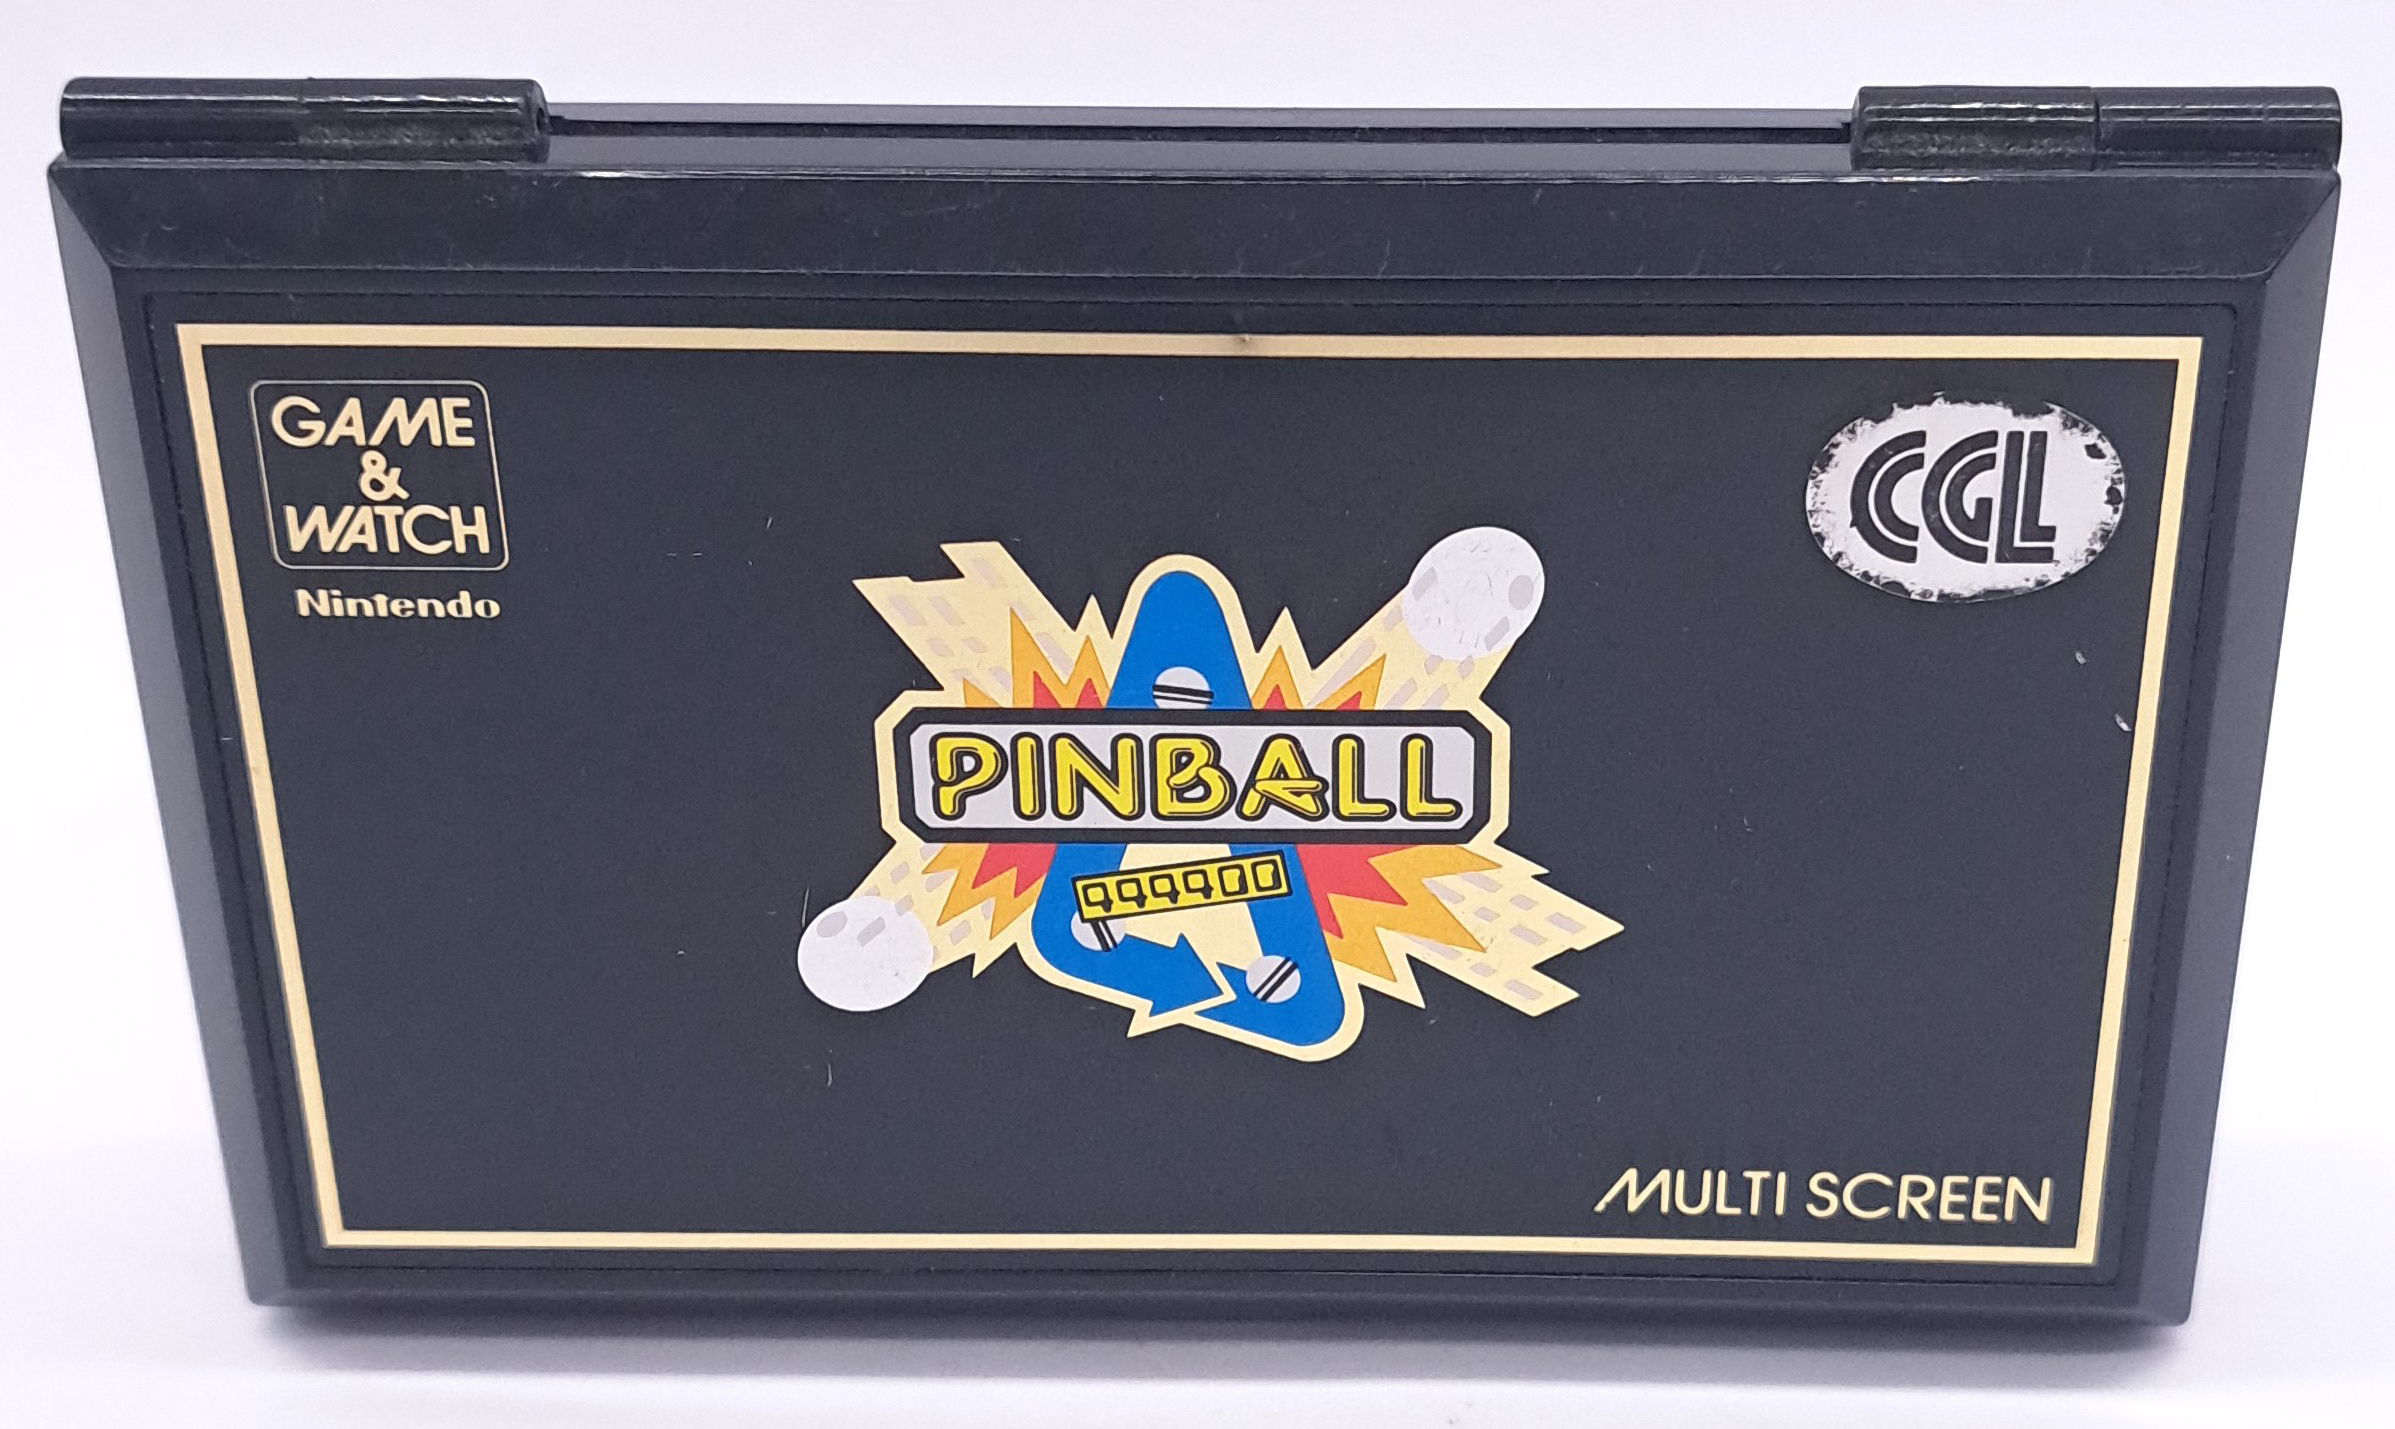 Vintage/Retro Gaming. Nintendo Game & Watch, boxed PB-59 “Pinball” - Image 5 of 12